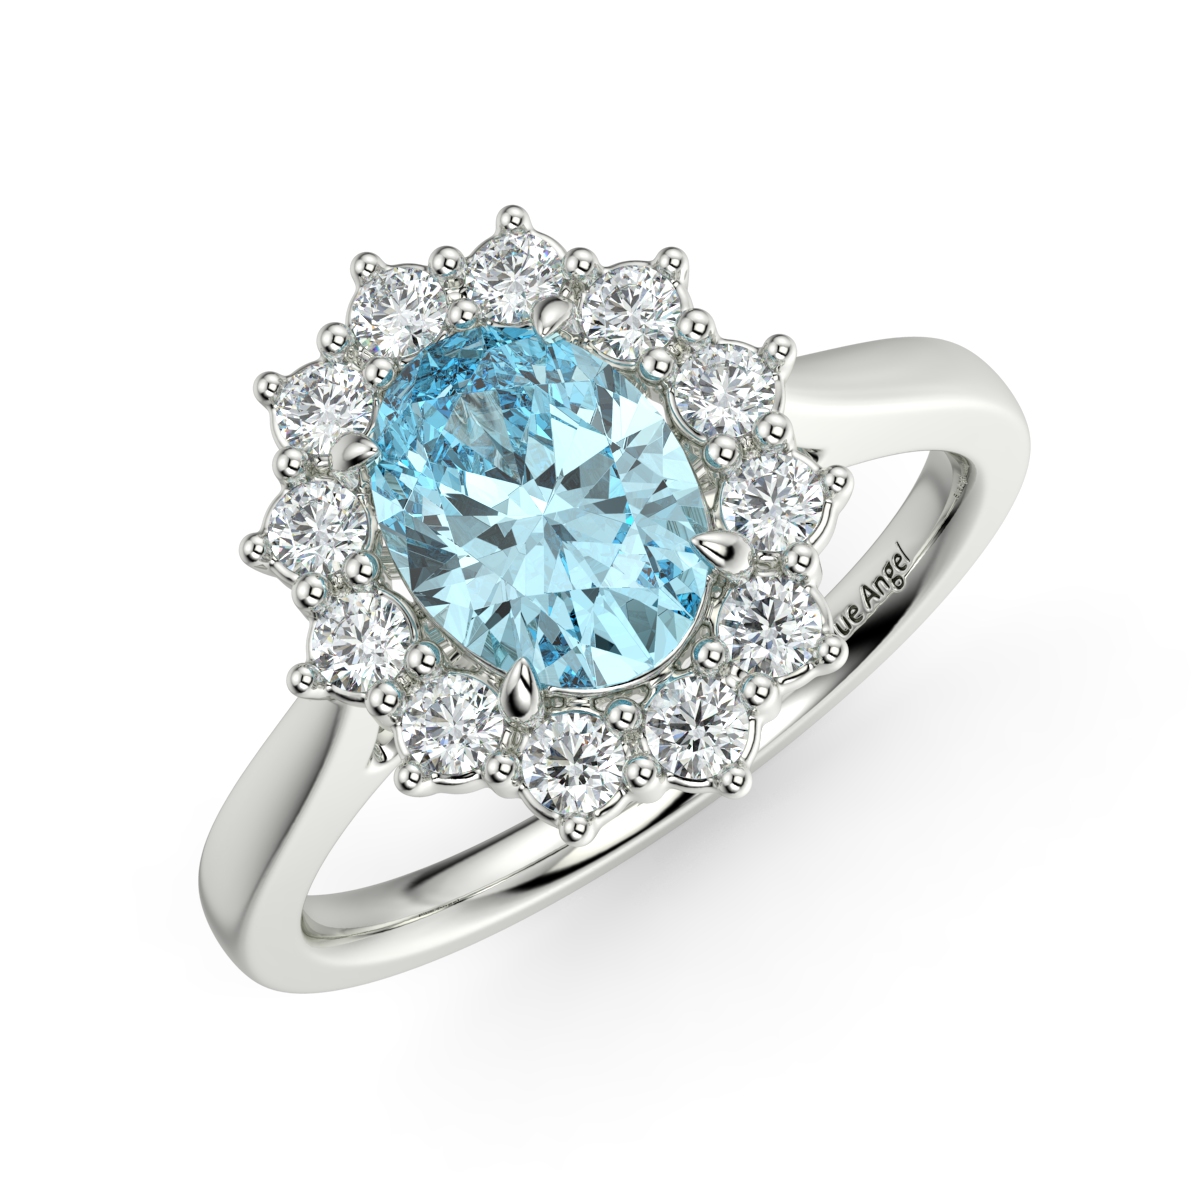 Gemstone Rings - Online & In-Store - Tomfoolery London